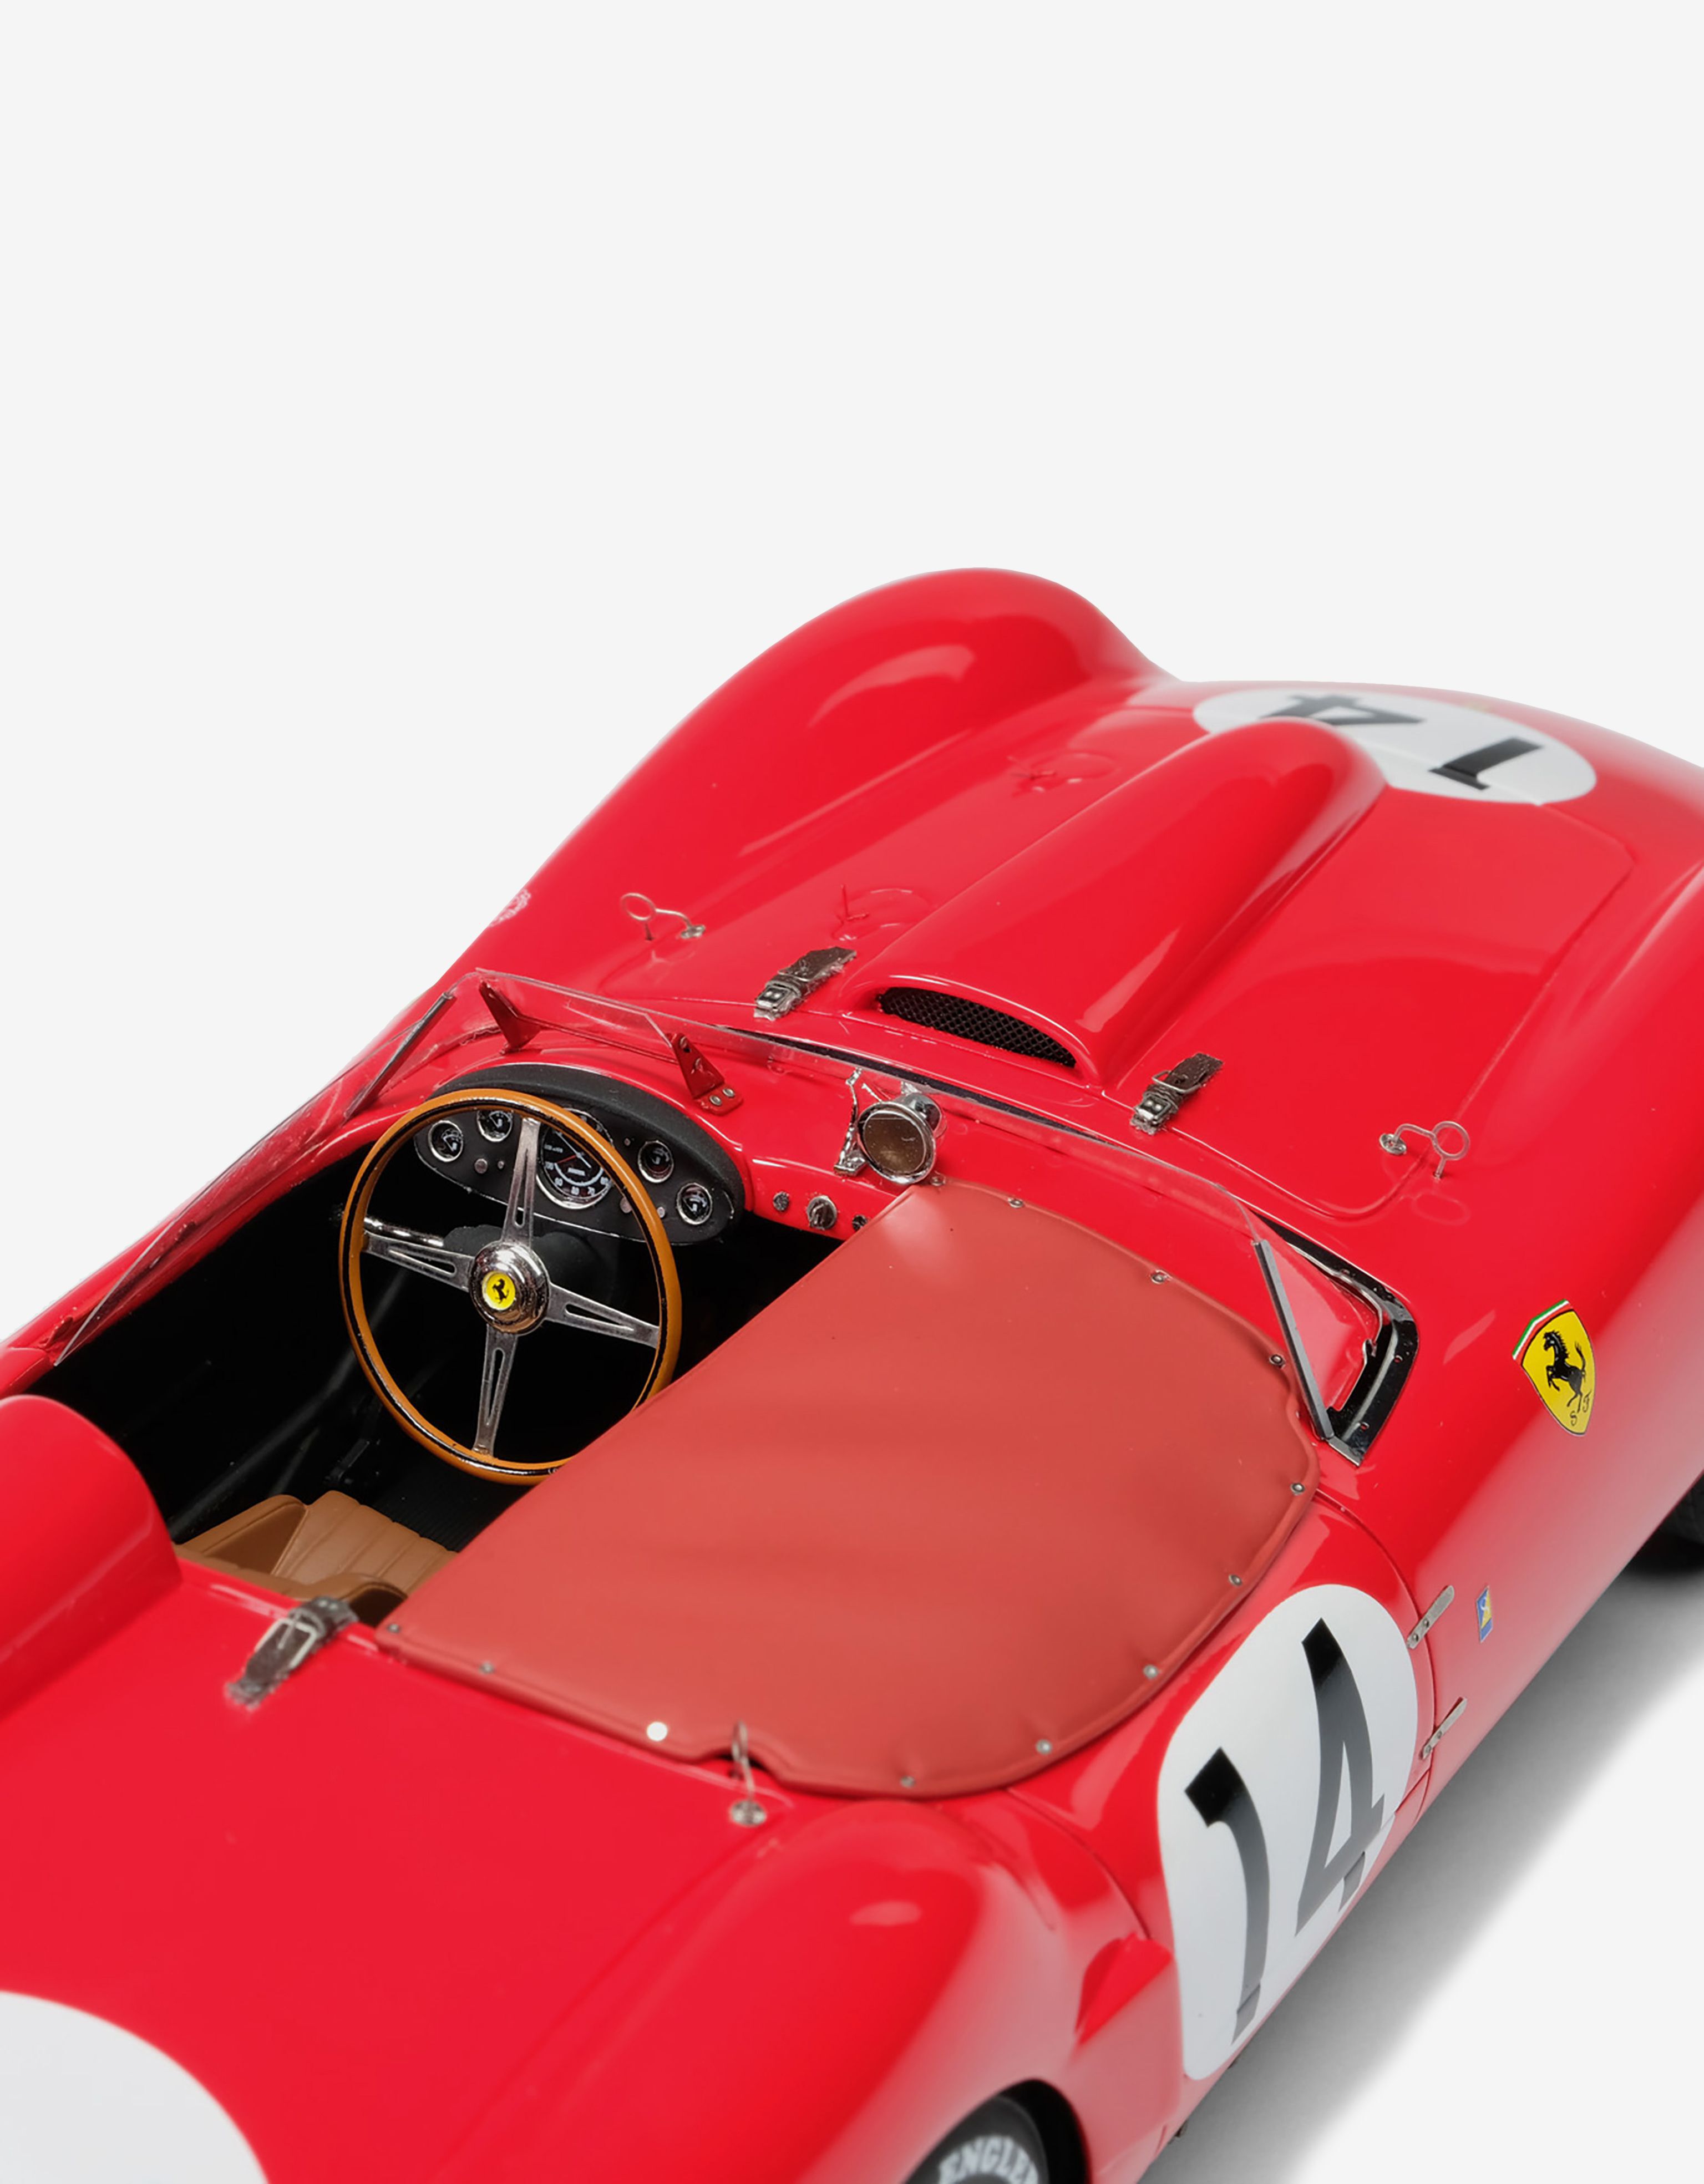 Ferrari 250 TR 1958 Le Mans model in 1:18 scale in Red | Ferrari®